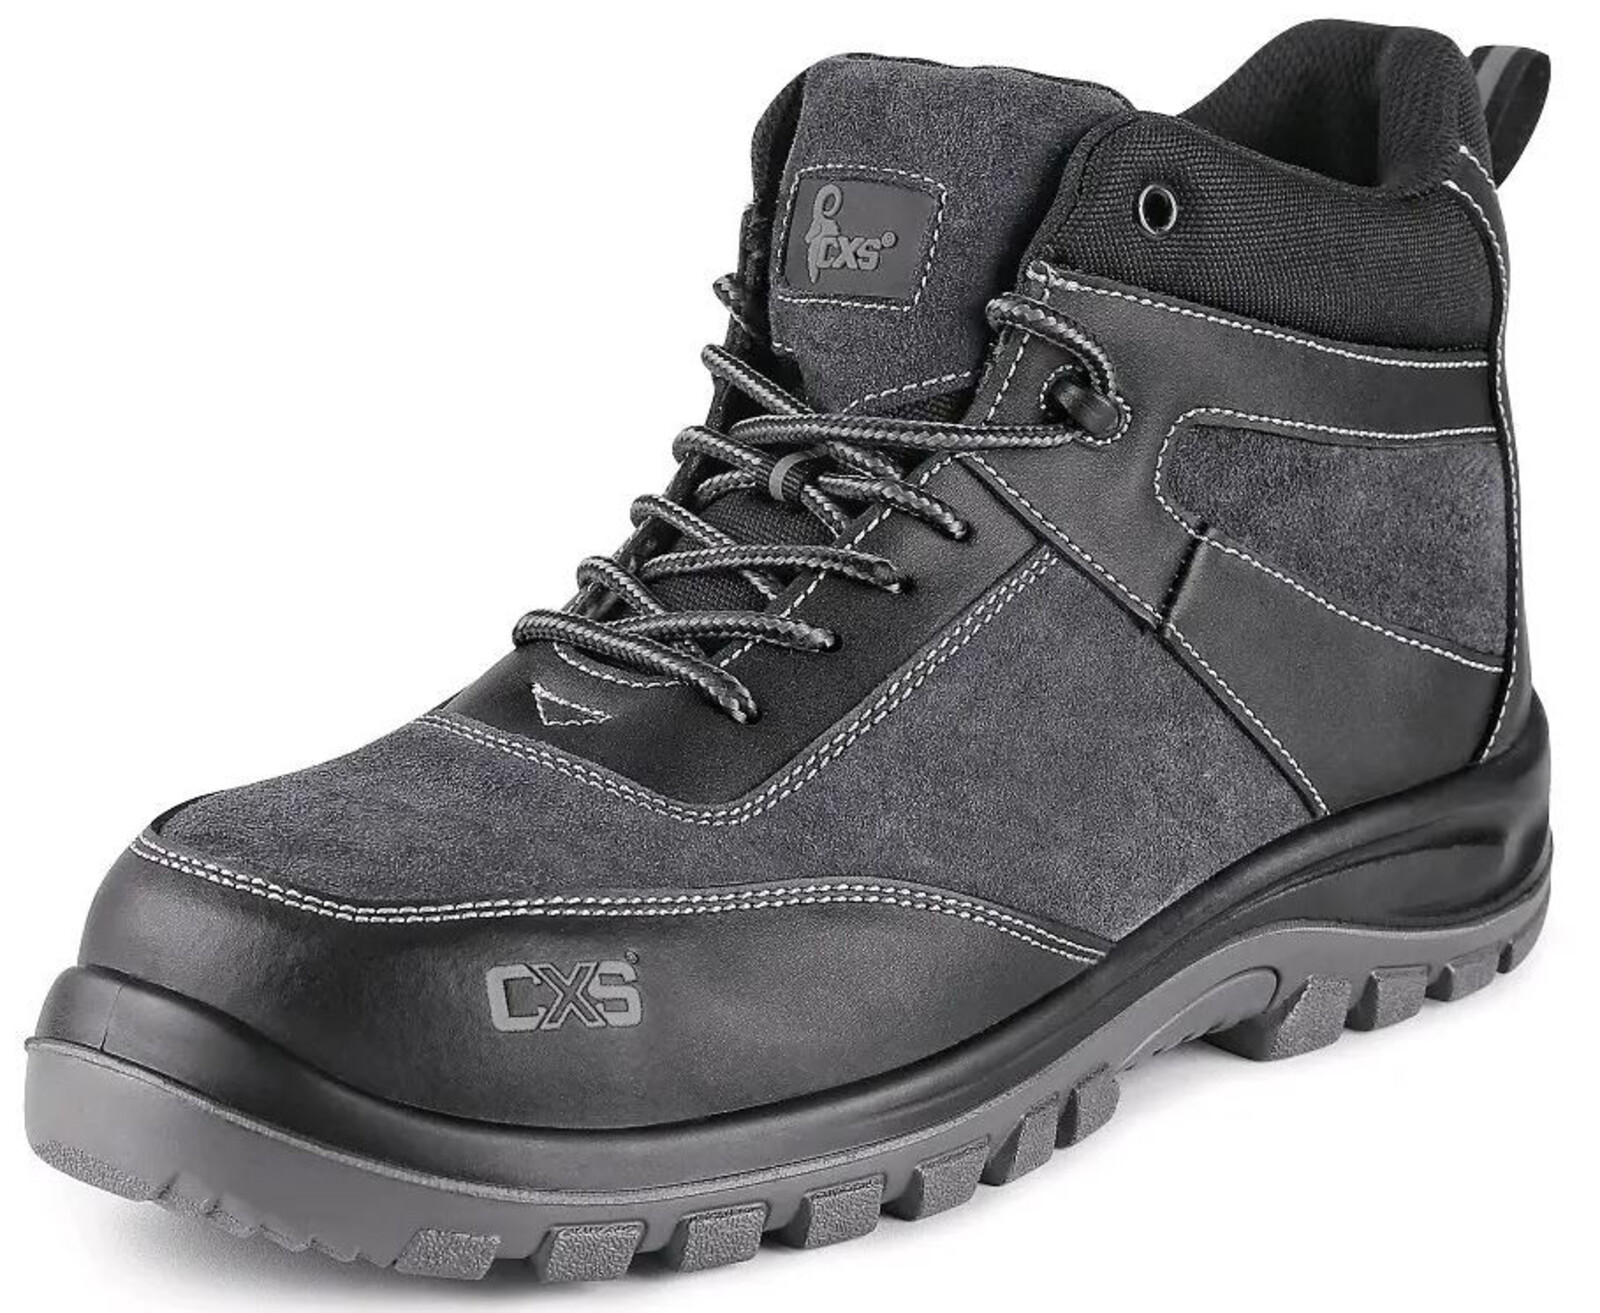 Pracovná členková obuv CXS Profit Win O1 FO SRC - veľkosť: 40, farba: čierna/sivá